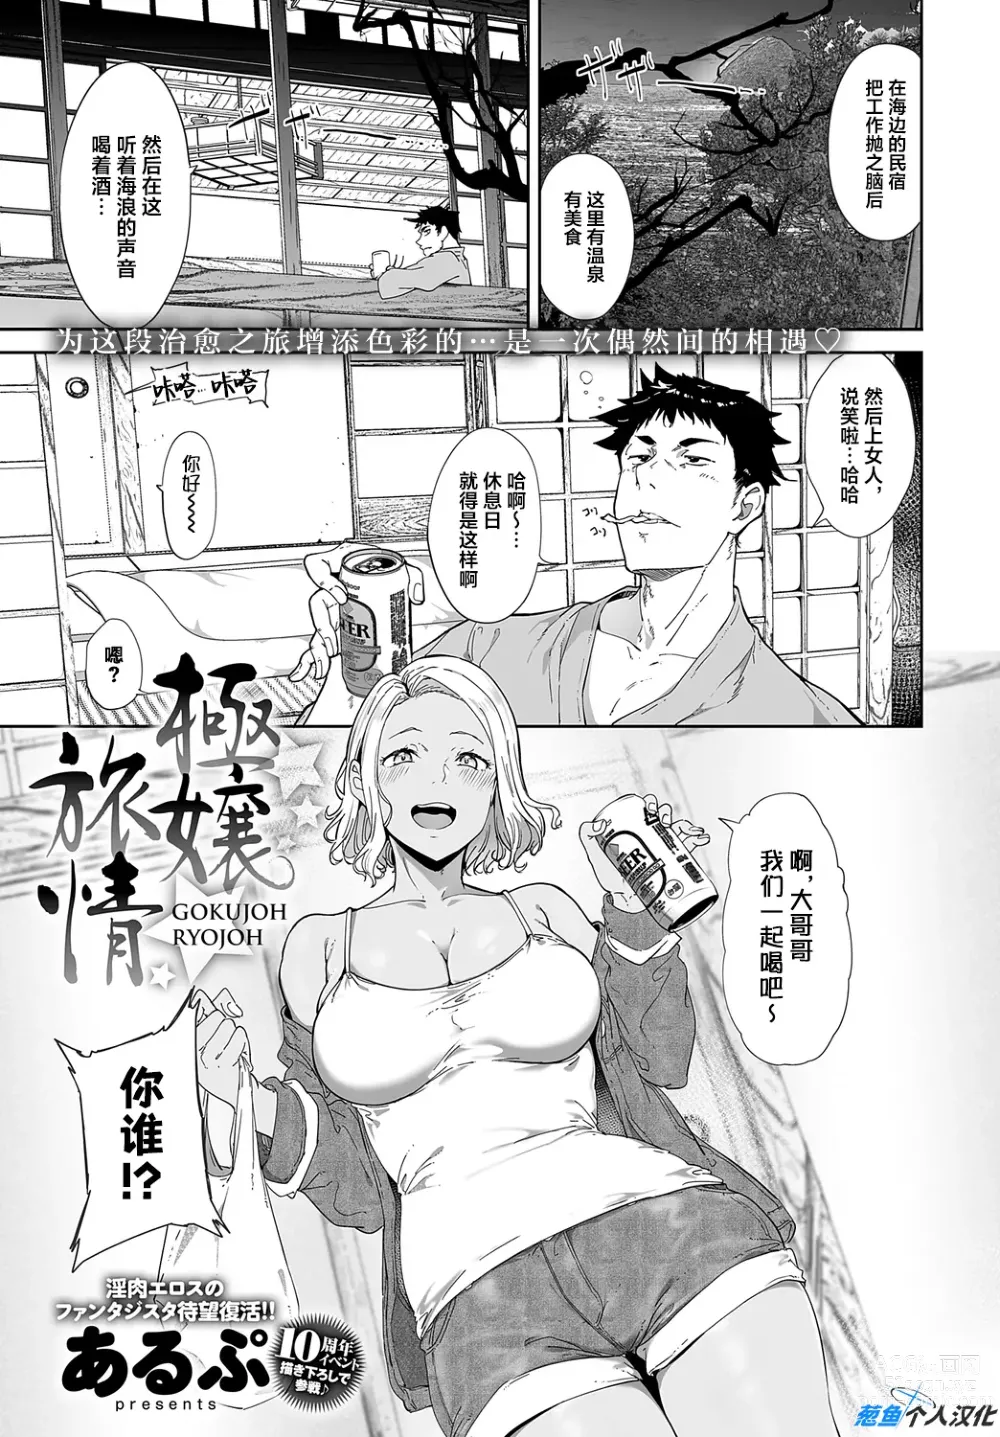 Page 1 of manga Gokujou Ryojou